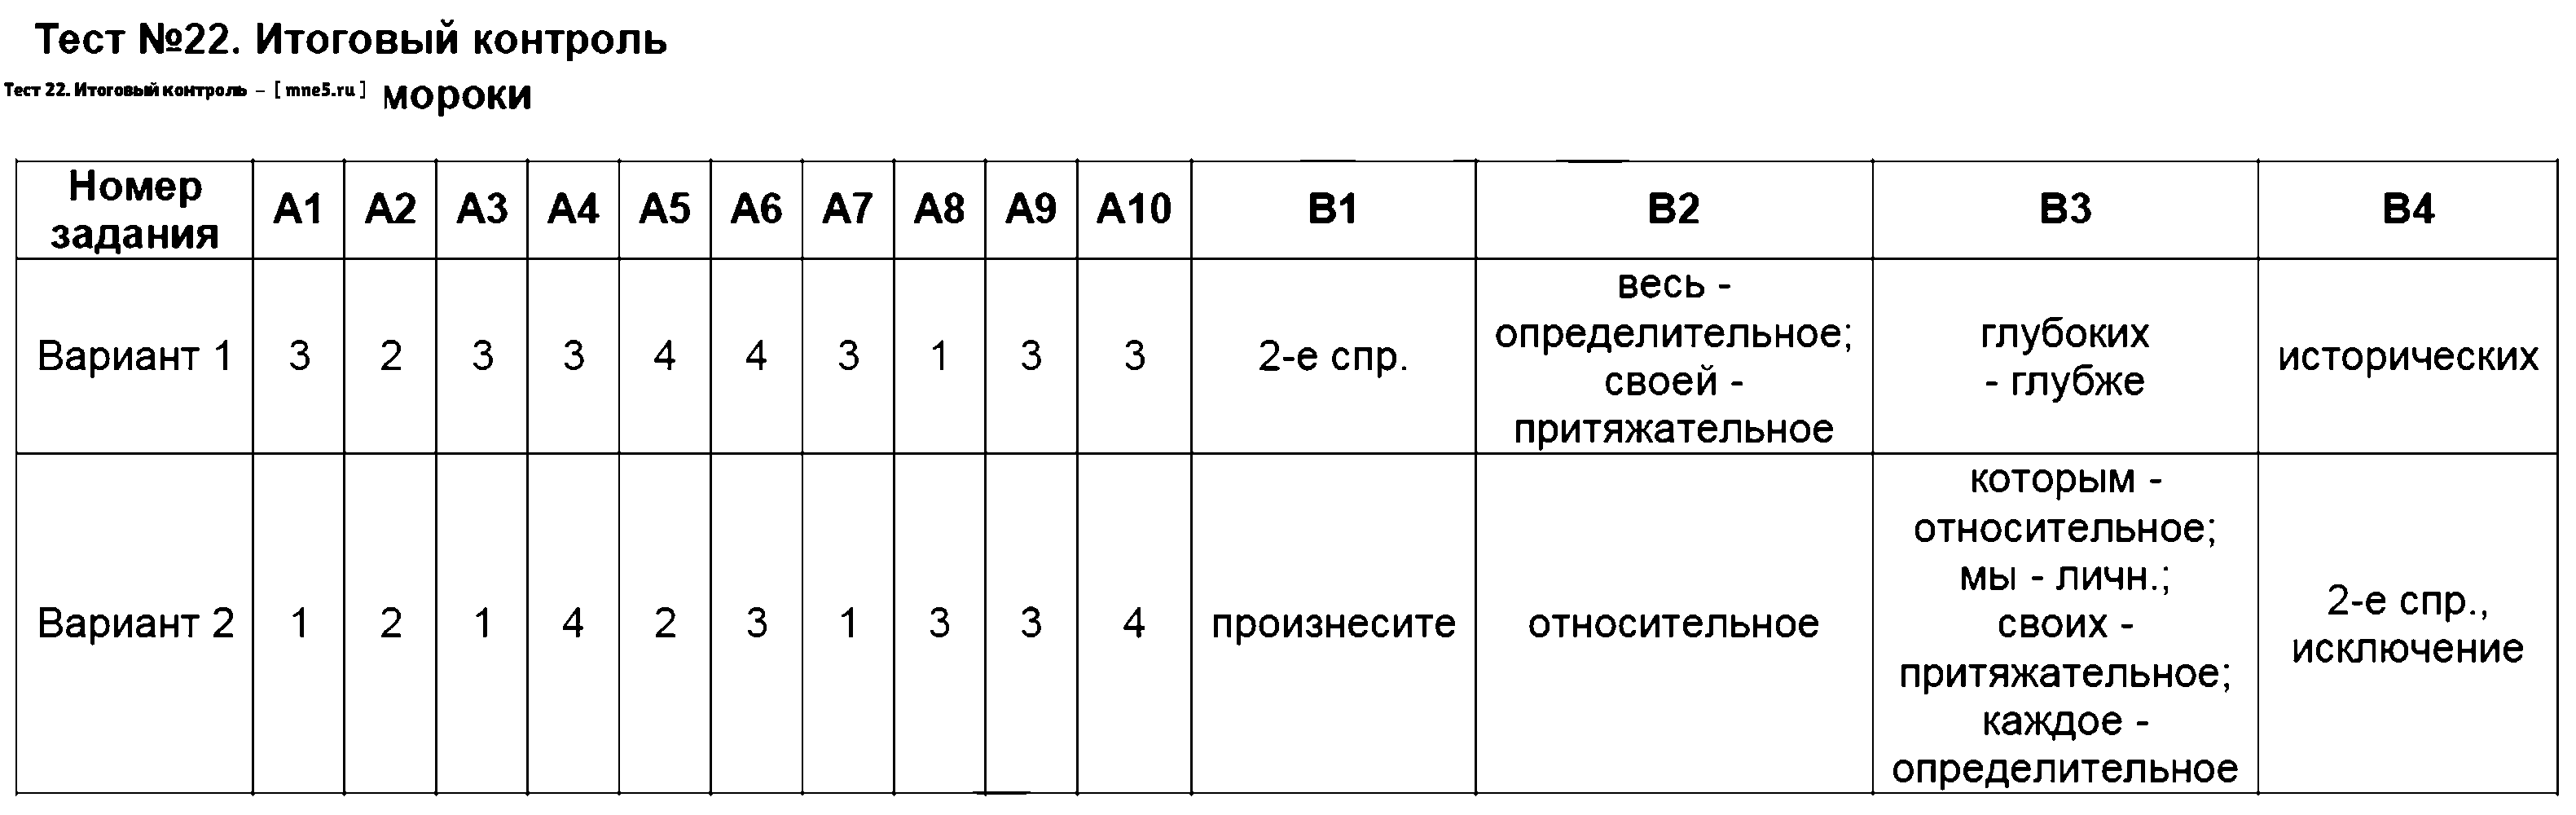 ГДЗ Русский язык 6 класс - Тест 22. Итоговый контроль